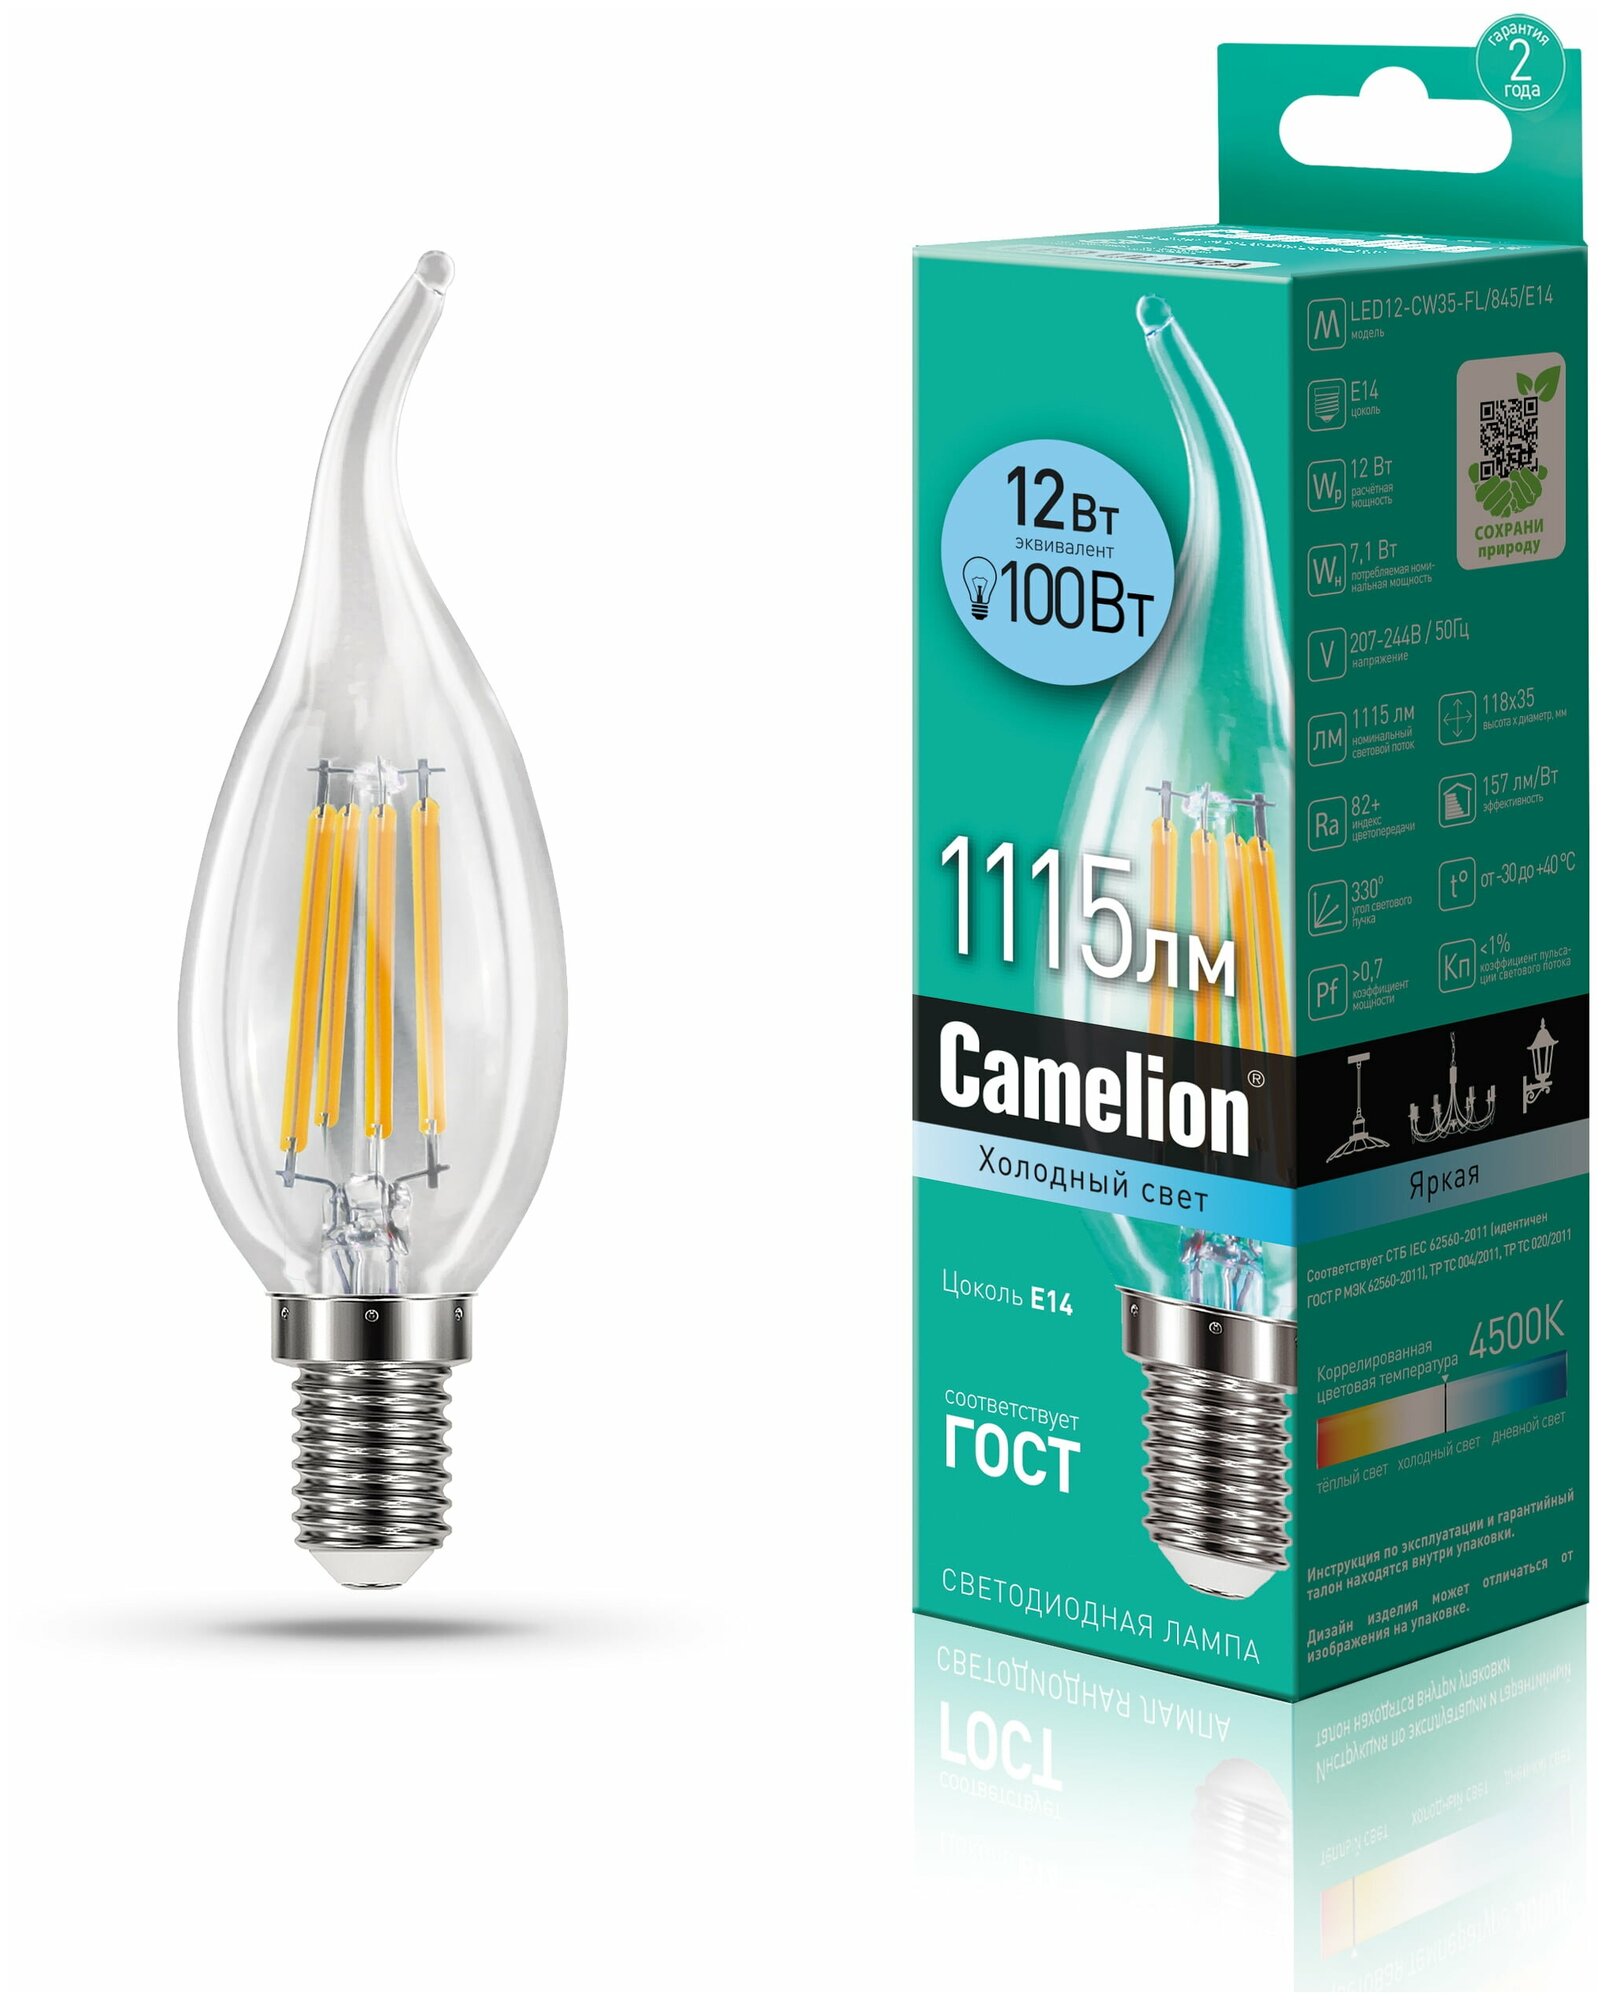 Светодиодная лампа Camelion LED12-CW35-FL/845/E14 12Вт